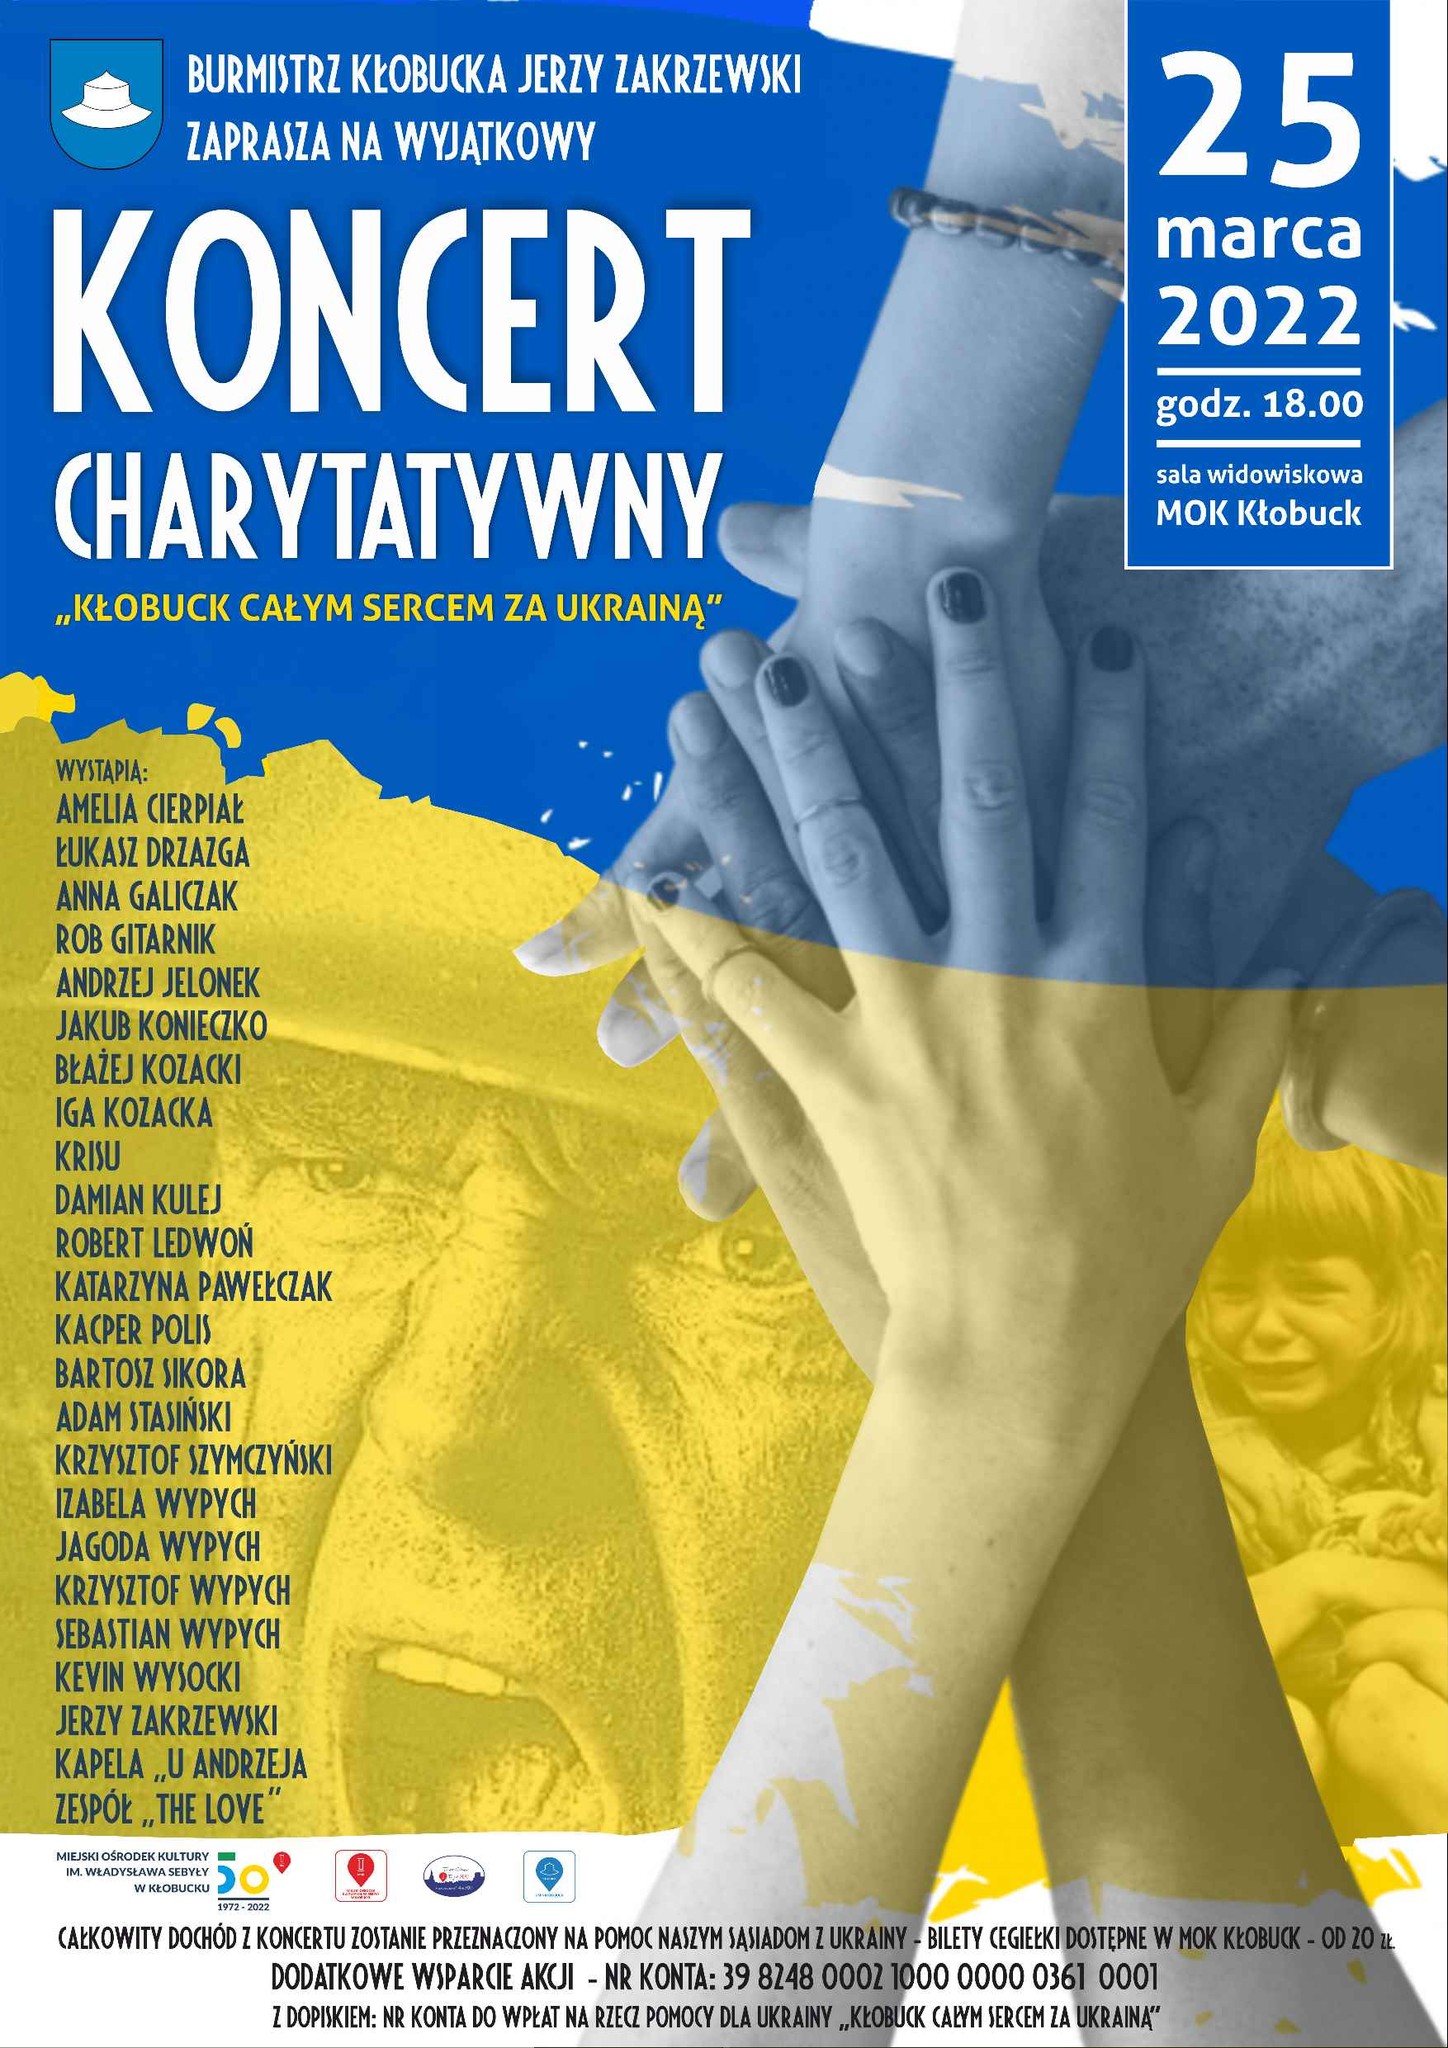 Kłobuck całym sercem z Ukrainą. Wyjątkowy koncert już 25 marca o godz. 18:00 1